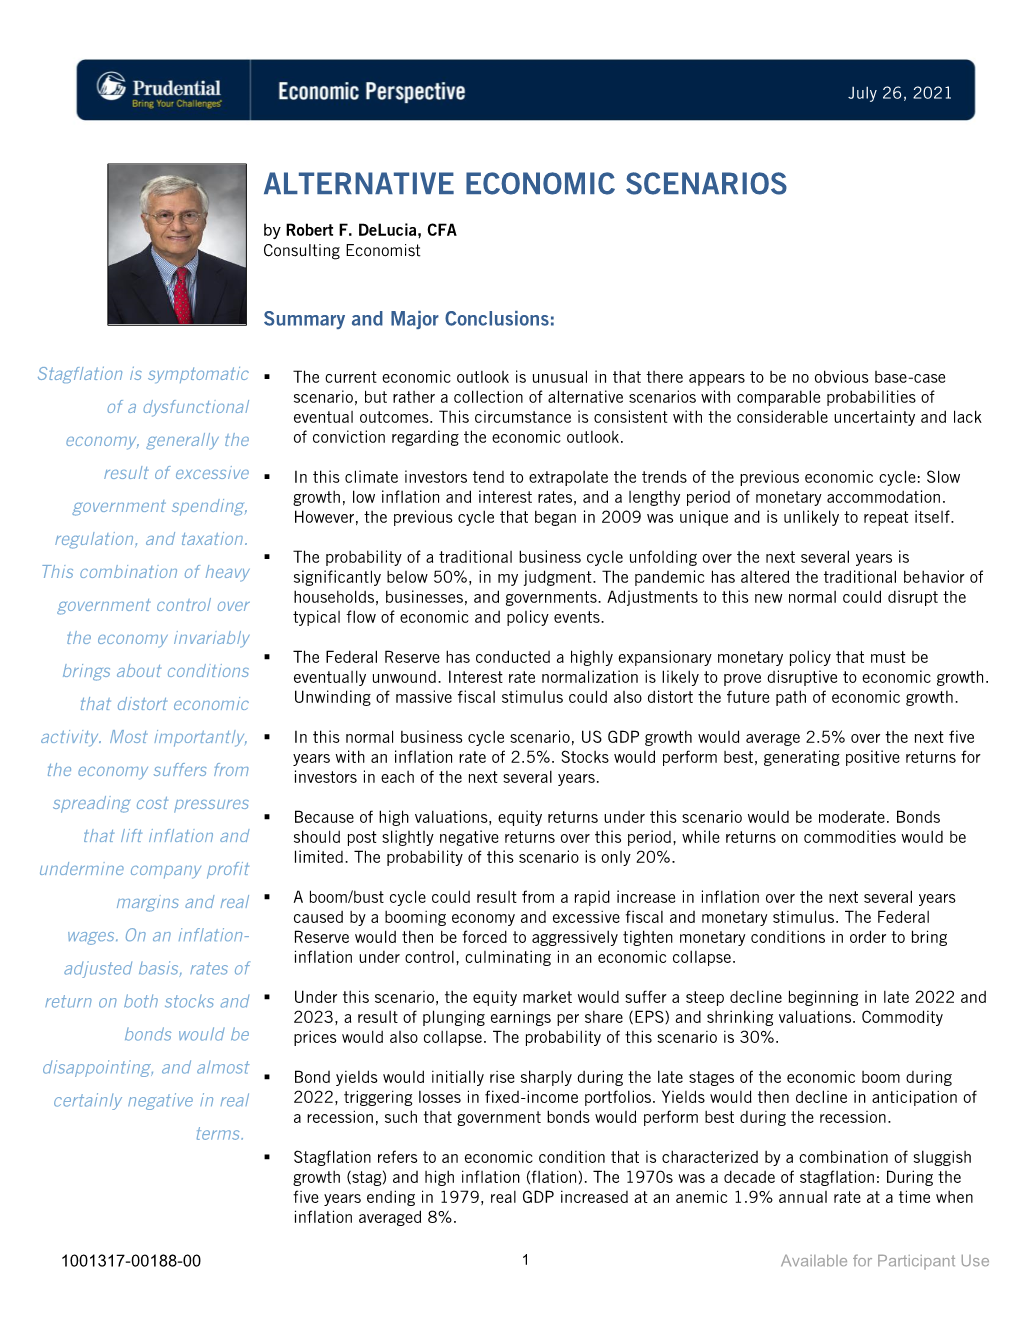 Alternative Economic Scenarios